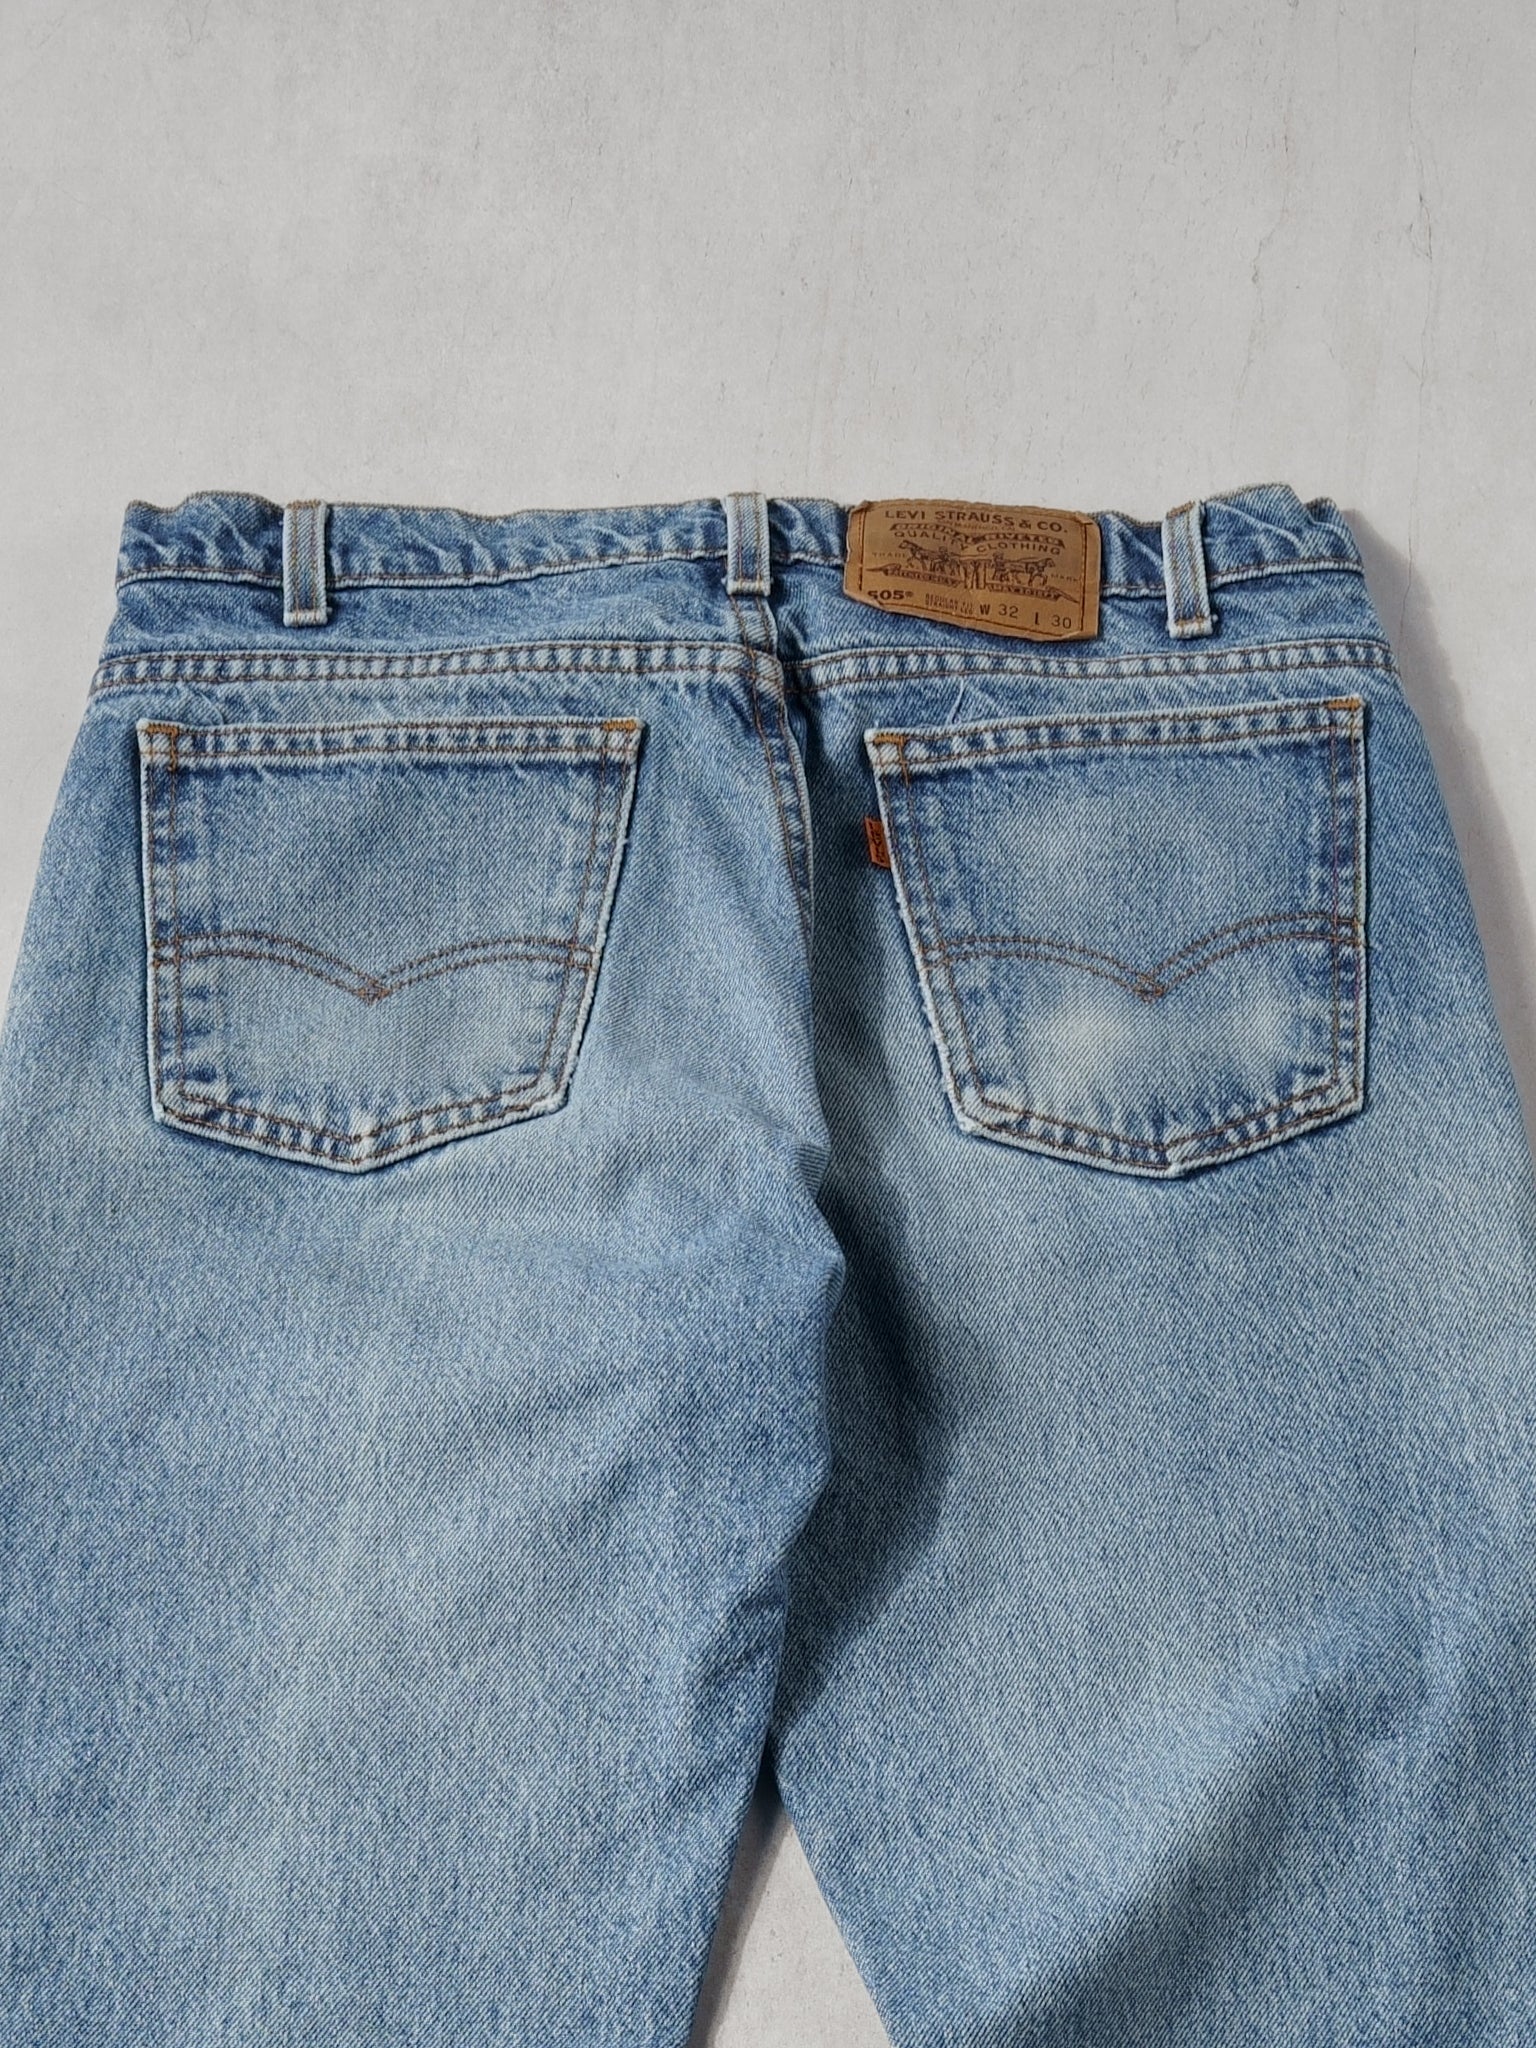 Vintage 80s Blue Levi's 505 Denim Jean (32x30)